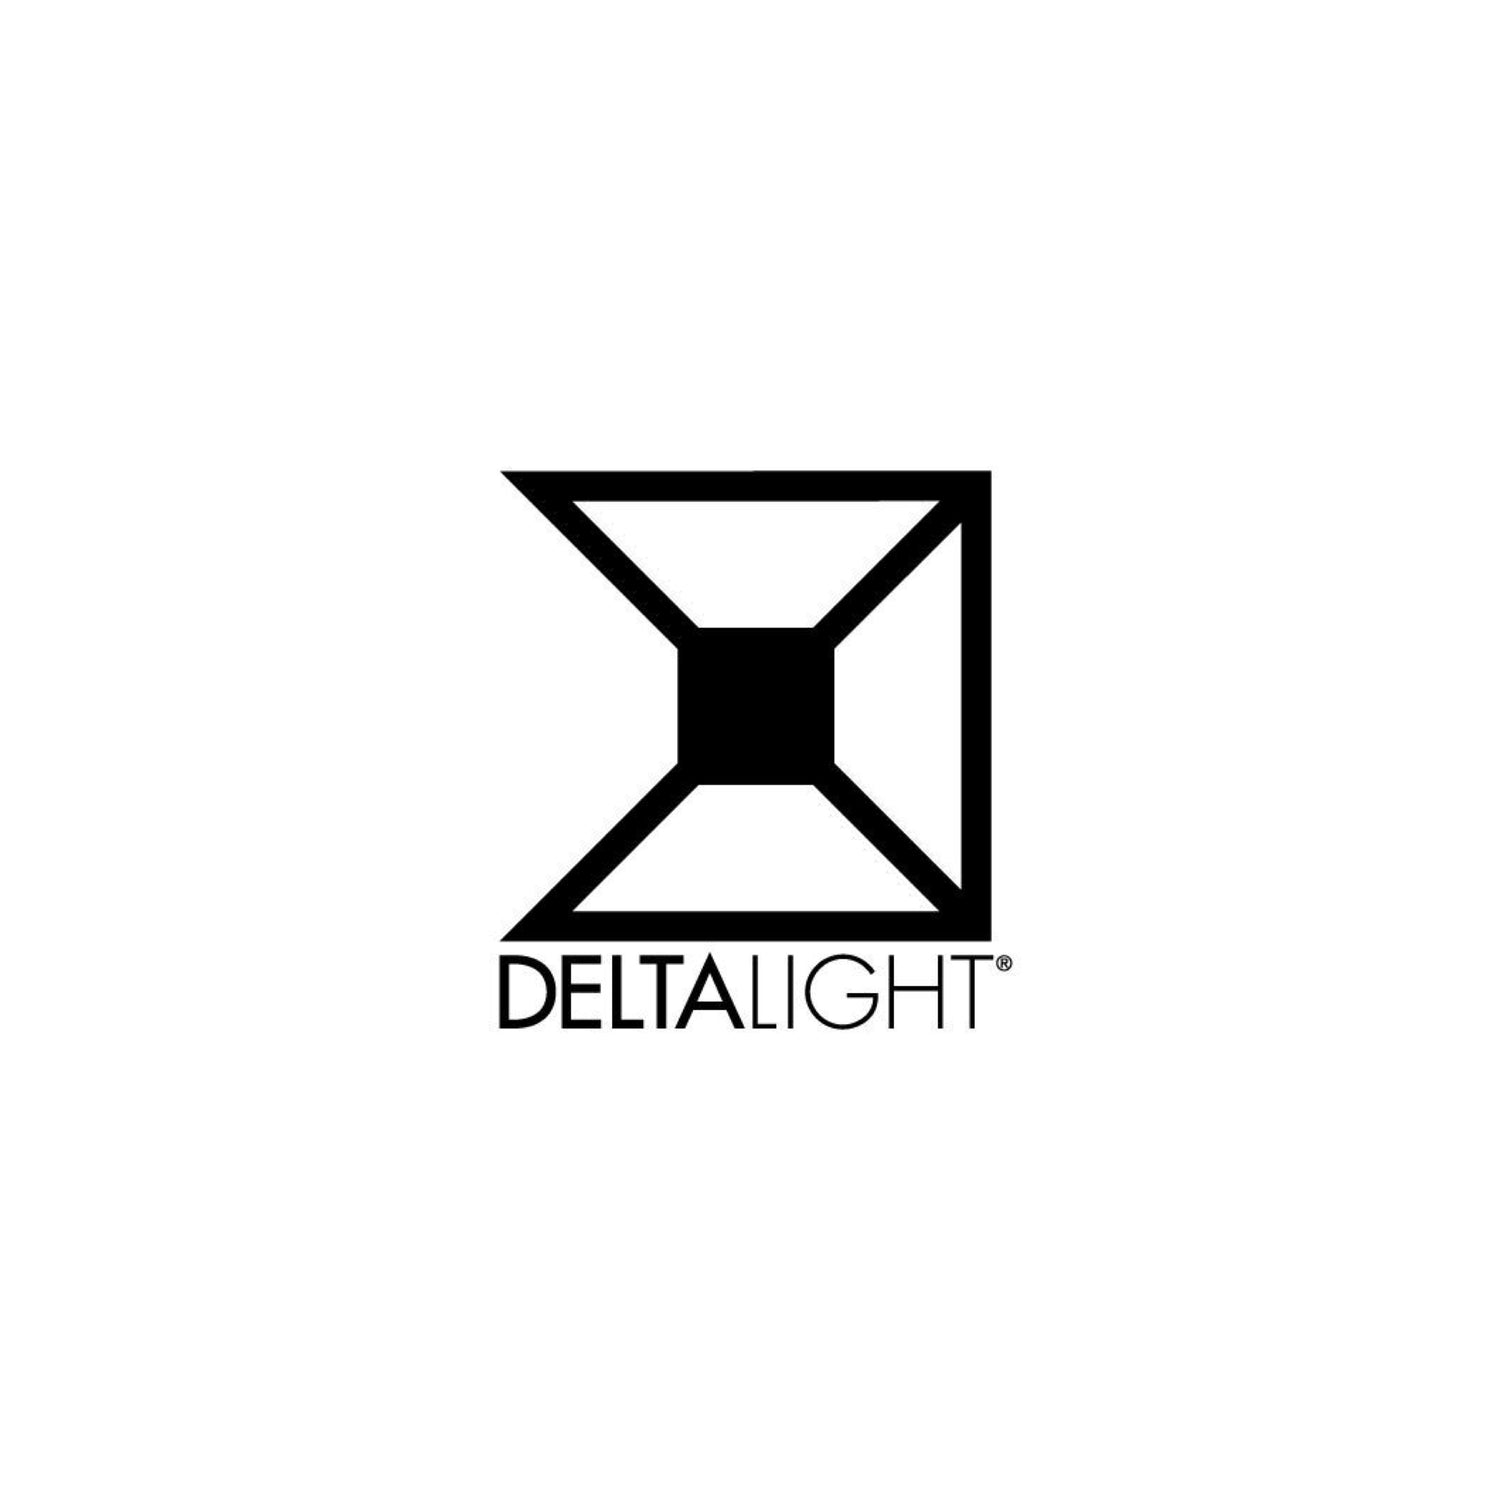 DELTA LIGHT USA LLC